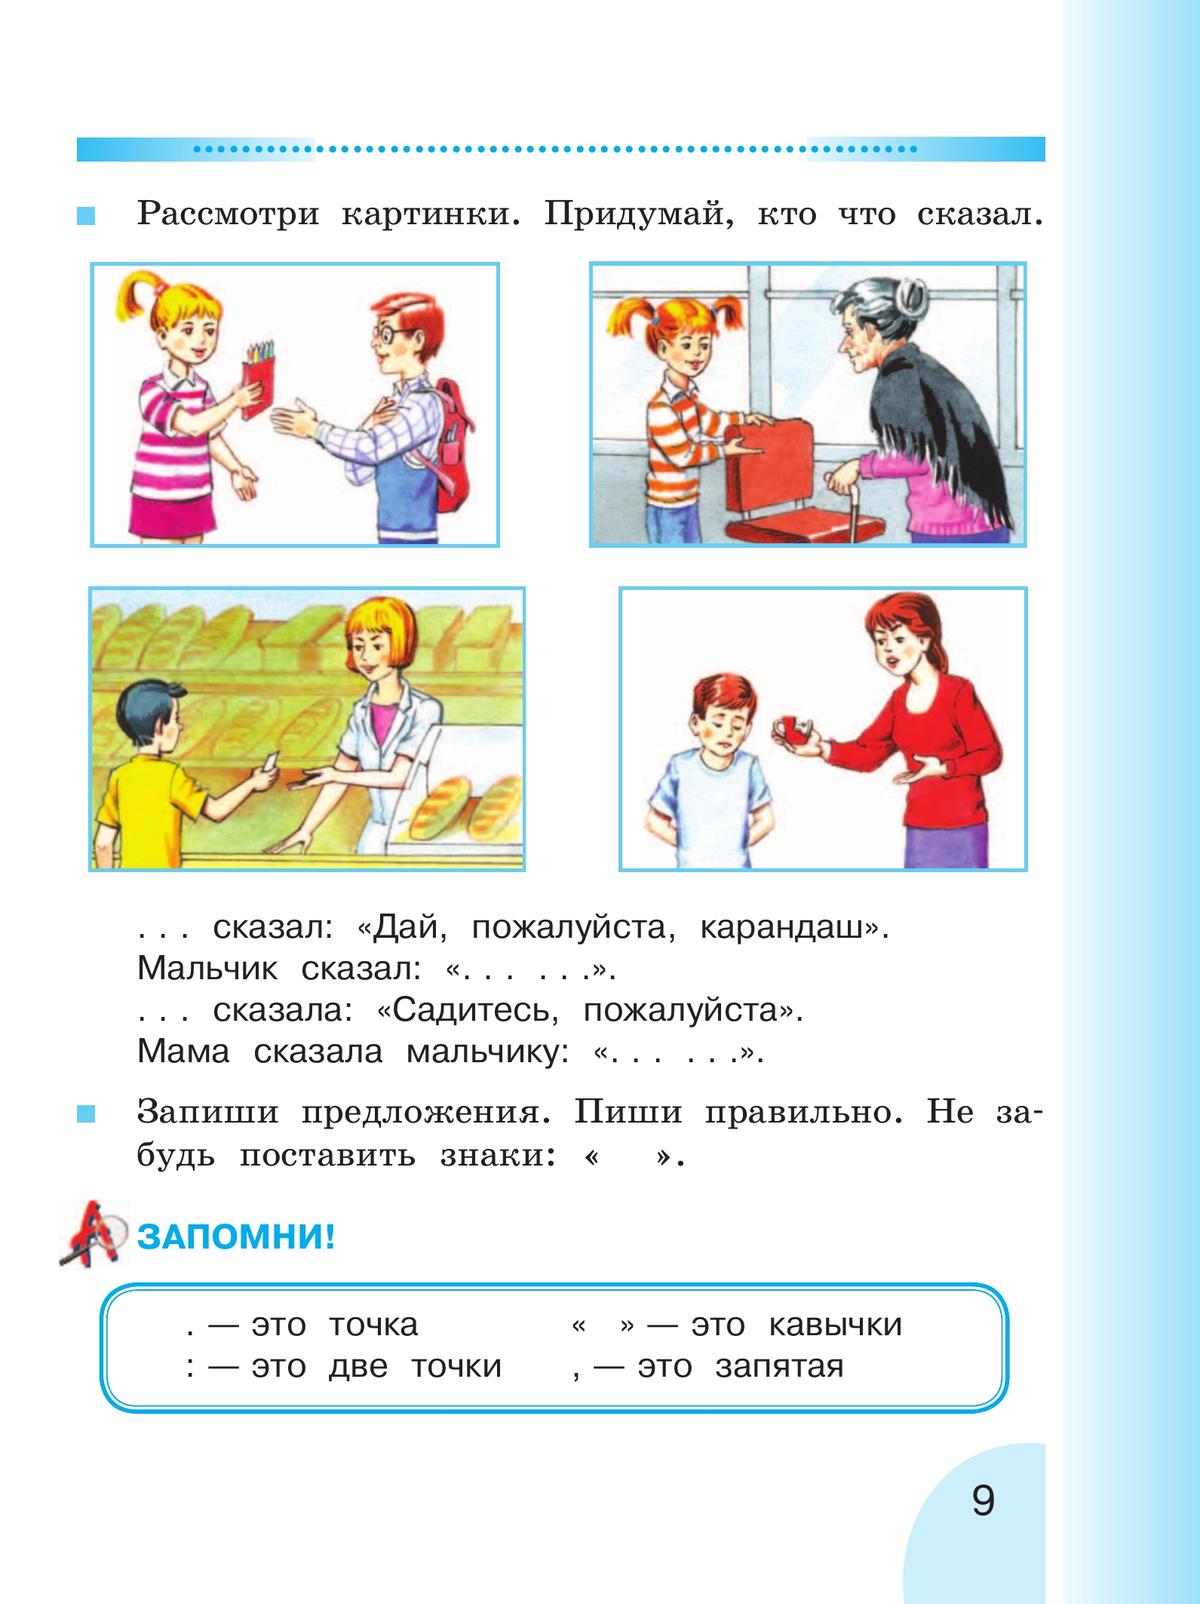 Русский язык. Развитие речи. 2 класс. Учебник. В 2 ч. Часть 2 (для глухих обучающихся) 8